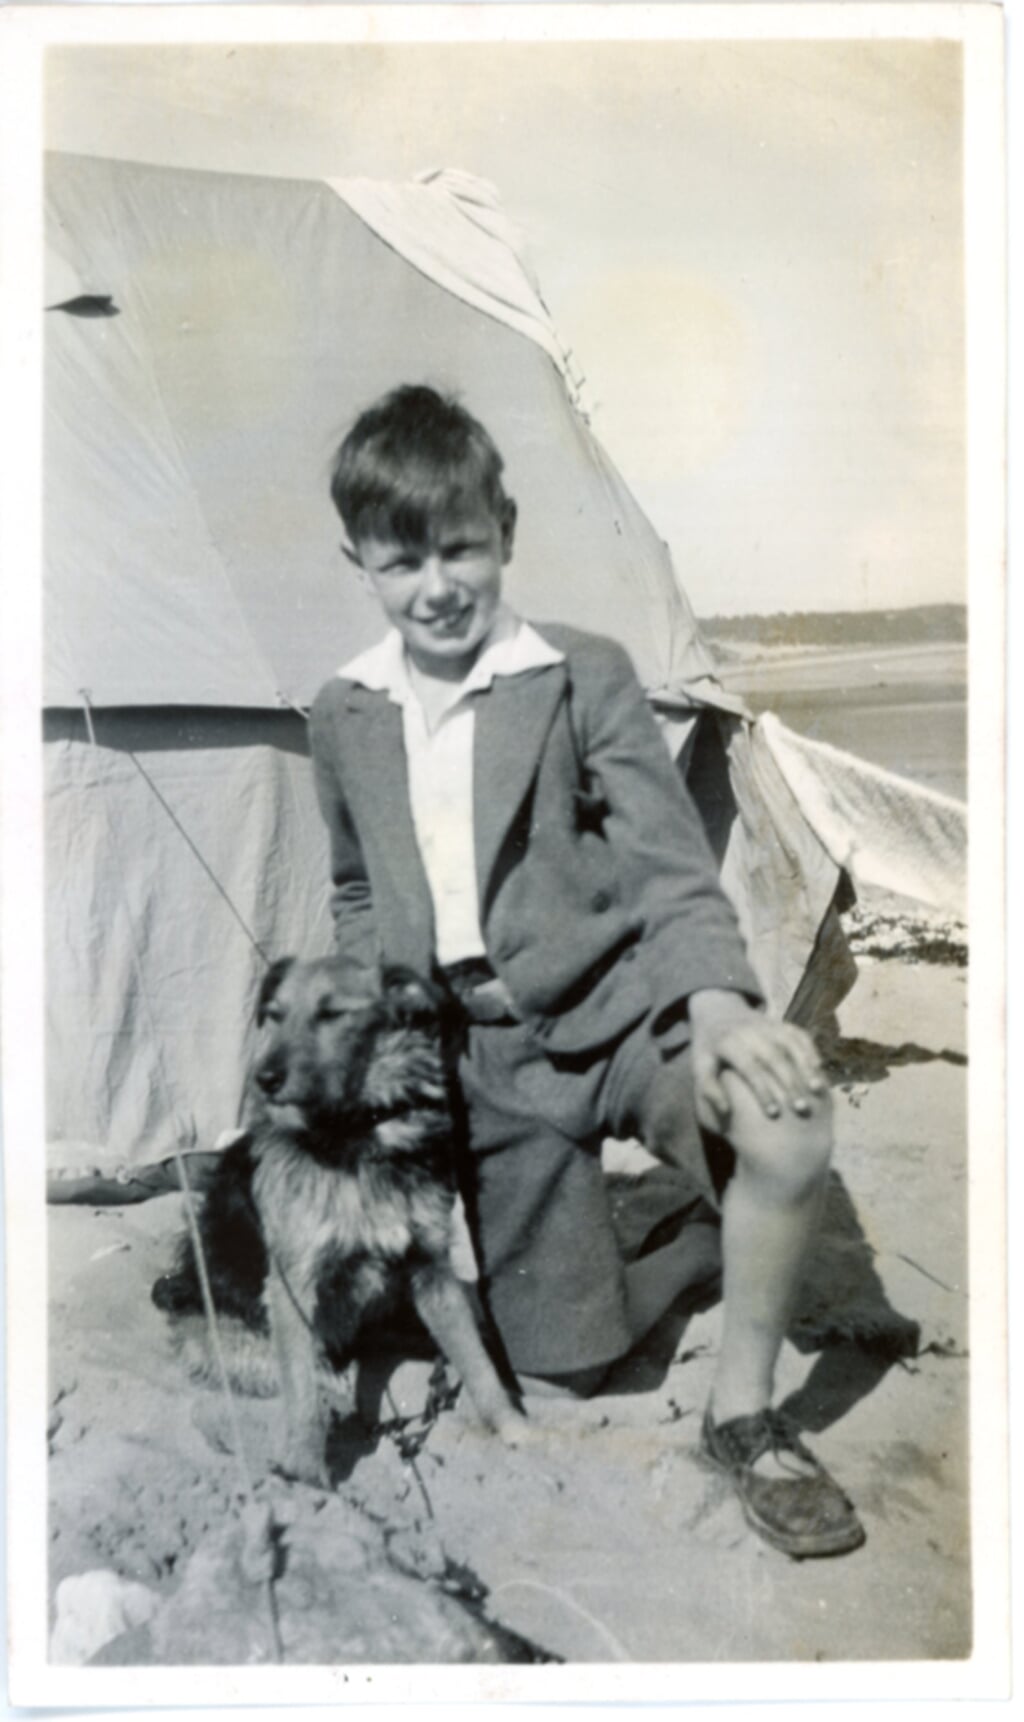 Godfrey in zijn kinderjaren, begin jaren 30.